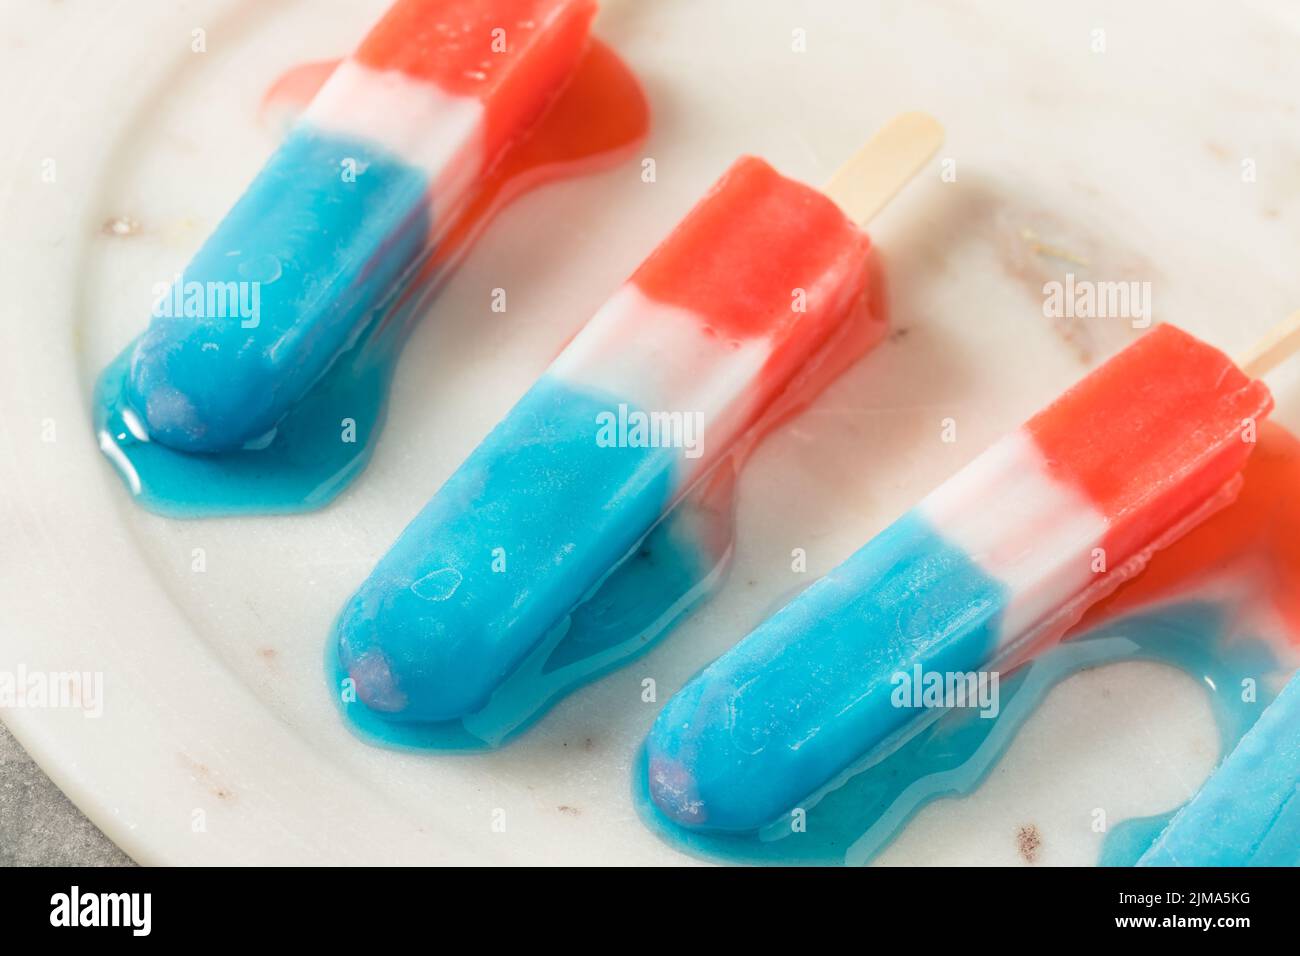 Popsicle Red White Blue fatto in casa pronto a mangiare per l'estate Foto Stock